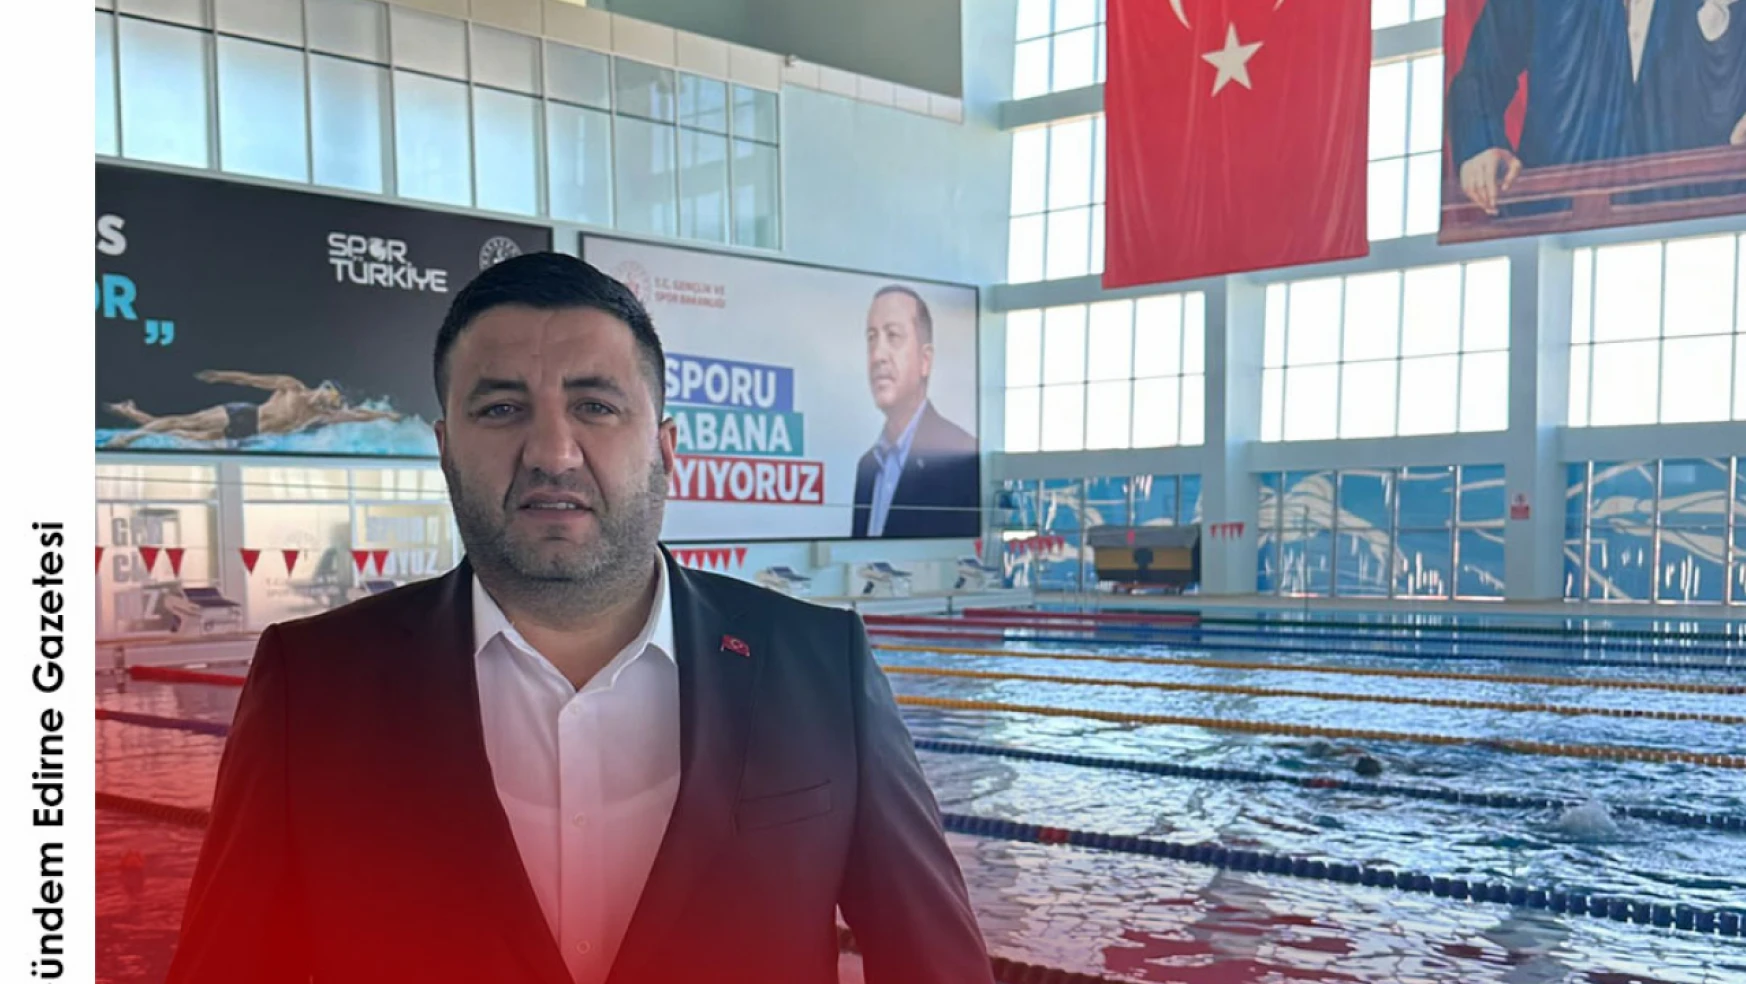 Yüzme milli takım seçmeleri 27-30 Nisan'da Edirne'de gerçekleştirilecek